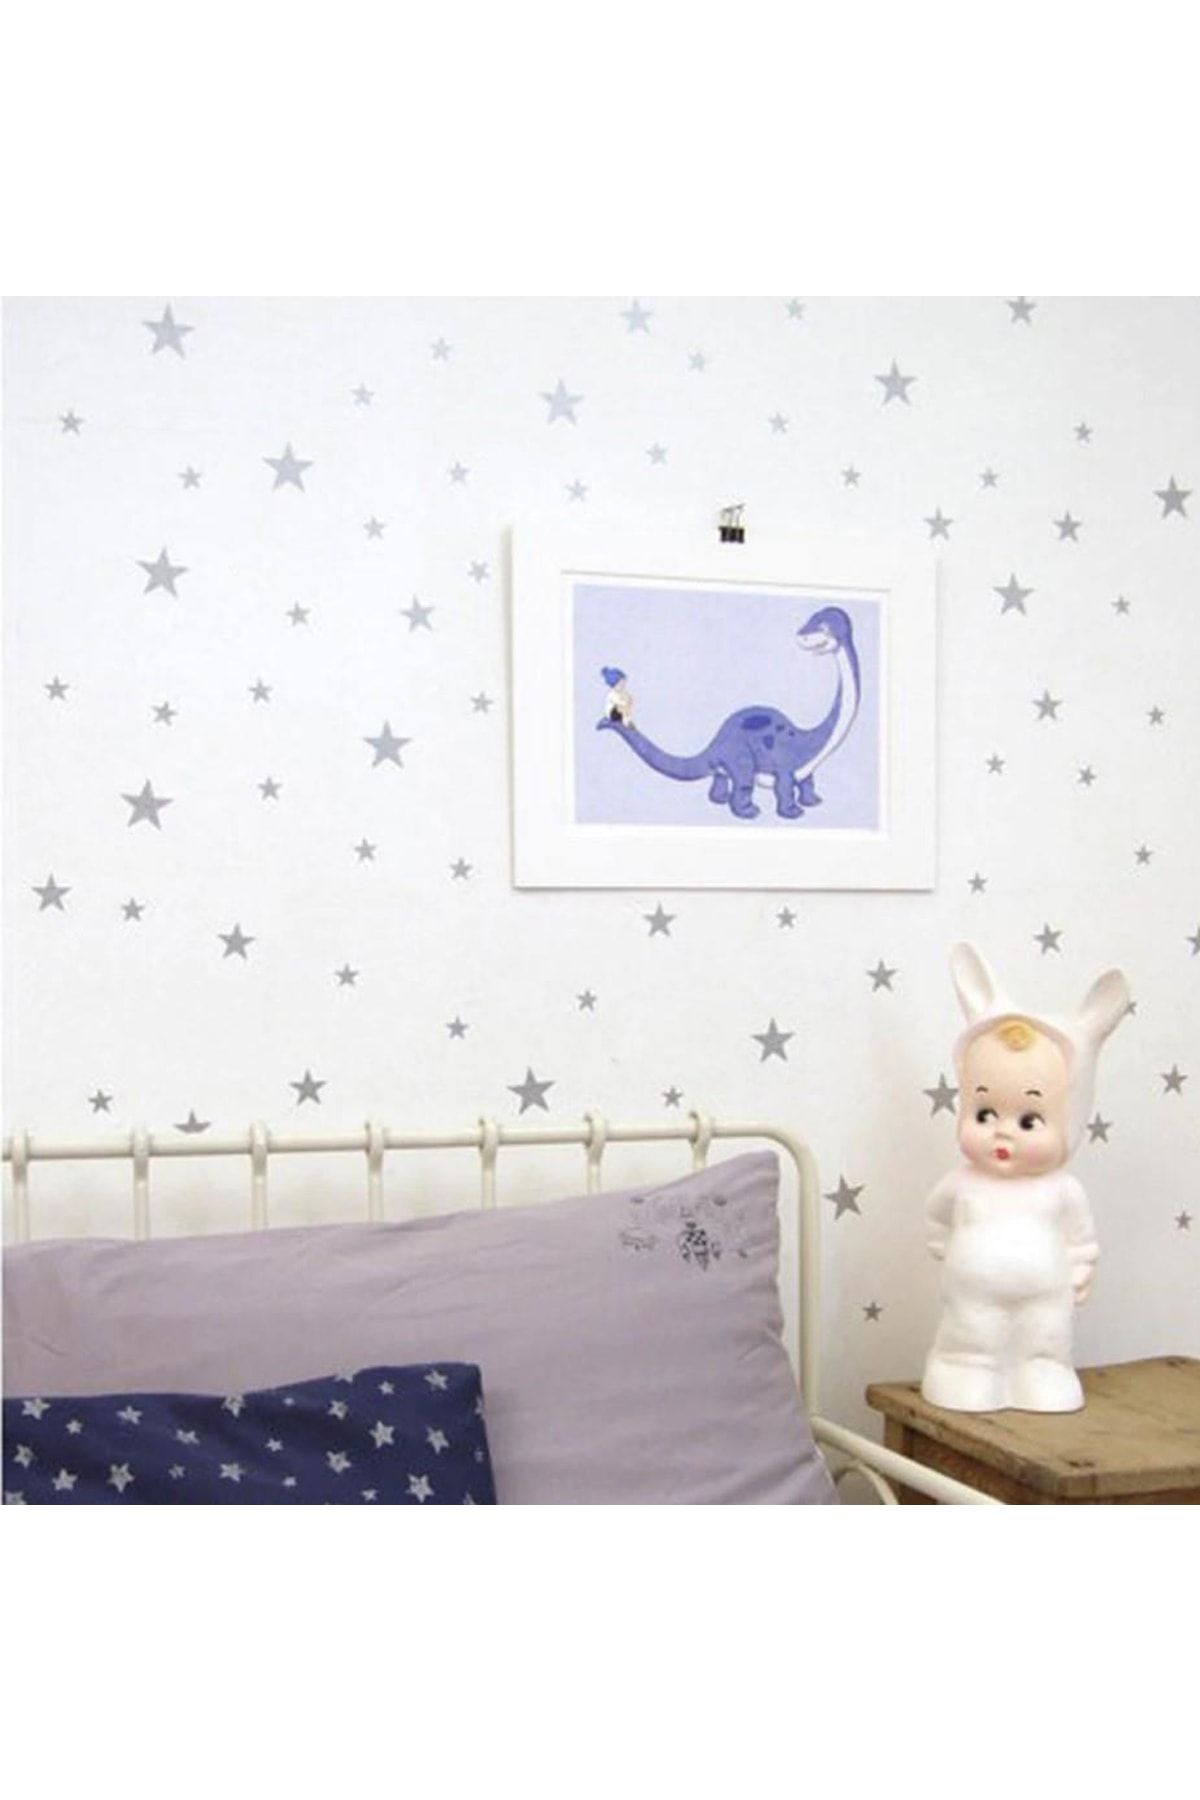 Keep Armor Çocuk Bebek Odası Duvar Yıldız Sticker Etiket Dekor 160 Adet Gri